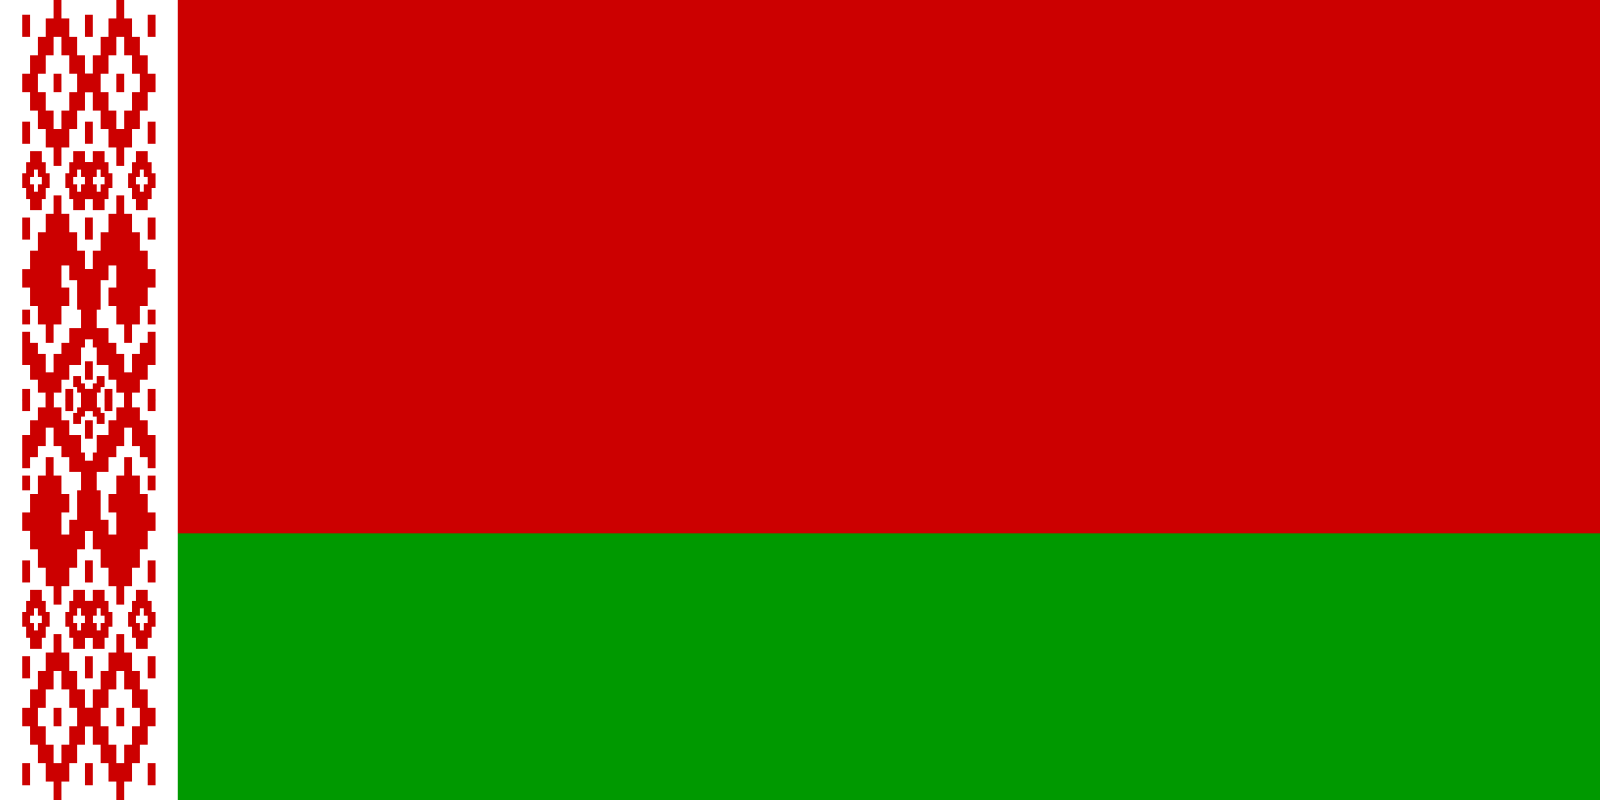 الرئيس البيلاروسي يرفع جاهزية جيش بلاده إلى أقصى درجات الاستعداد القتالي